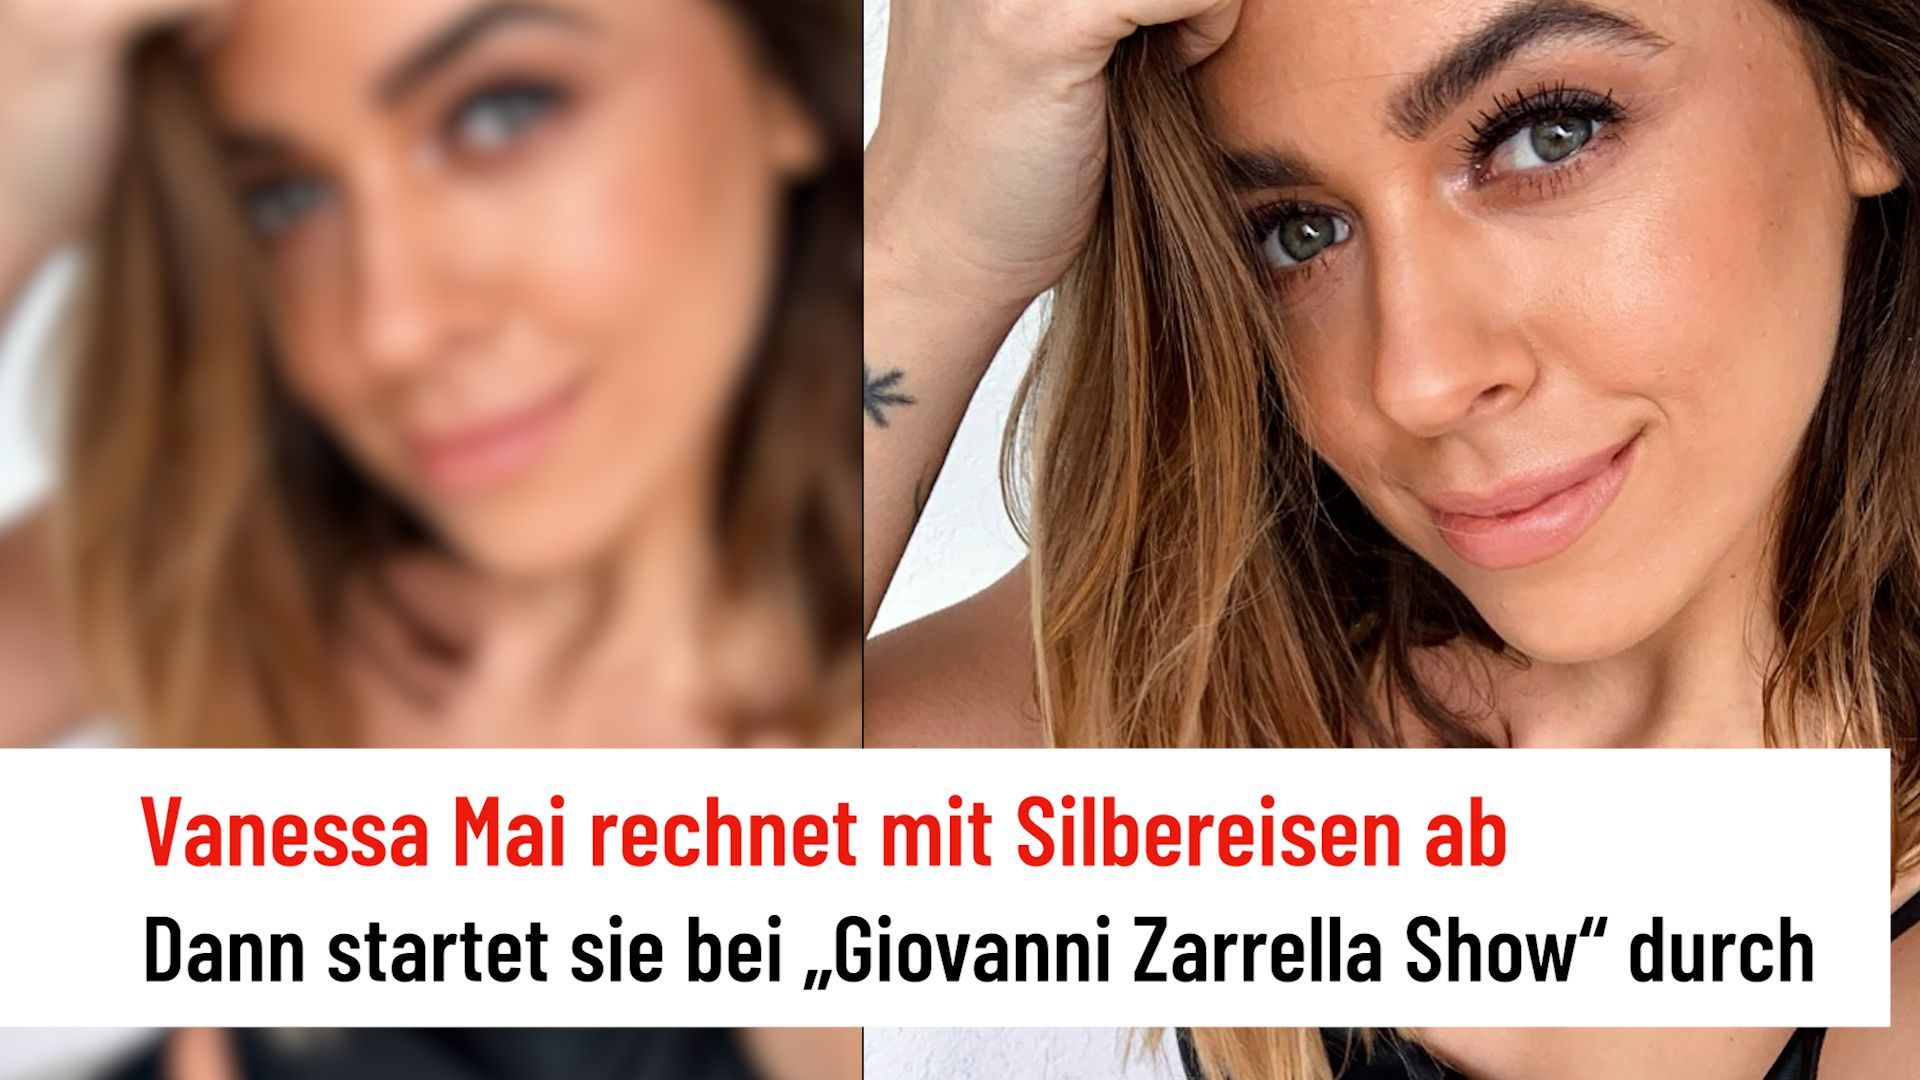 Vanessa Mai: After stress around Silbereisen show now with Giovanni Zarrella